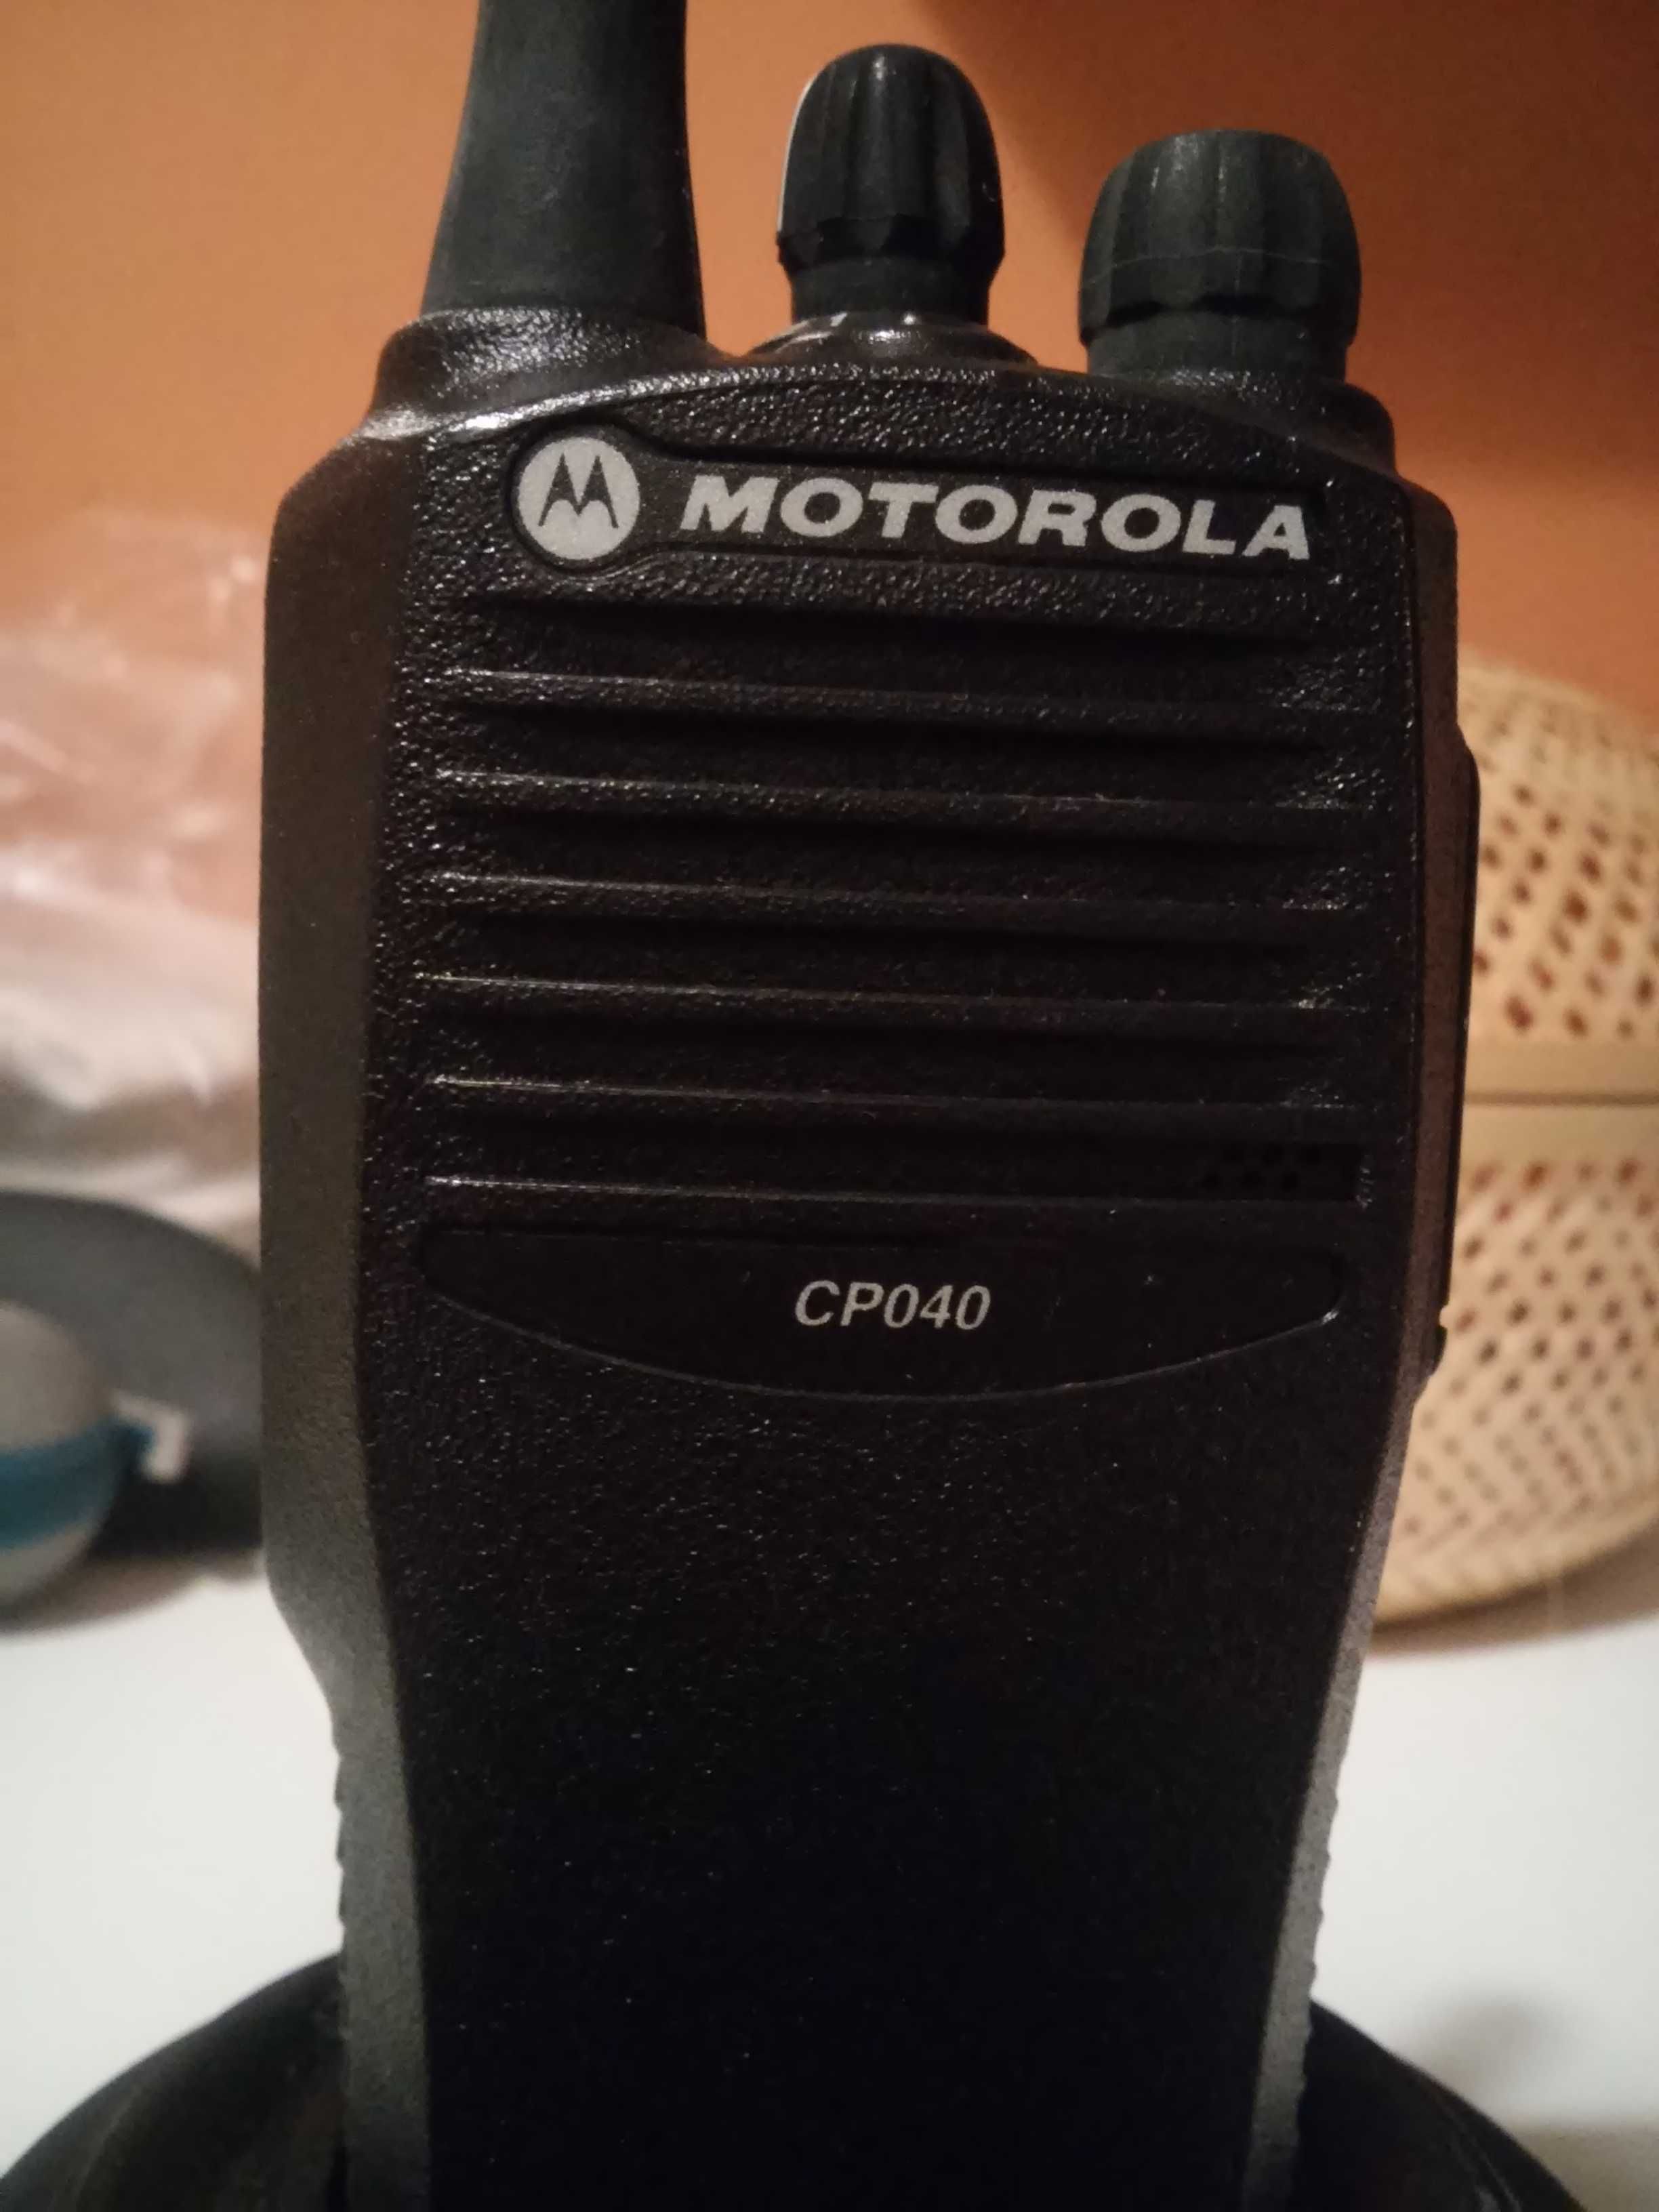 Rádio Motorola CP040 como novo com base de carregamento